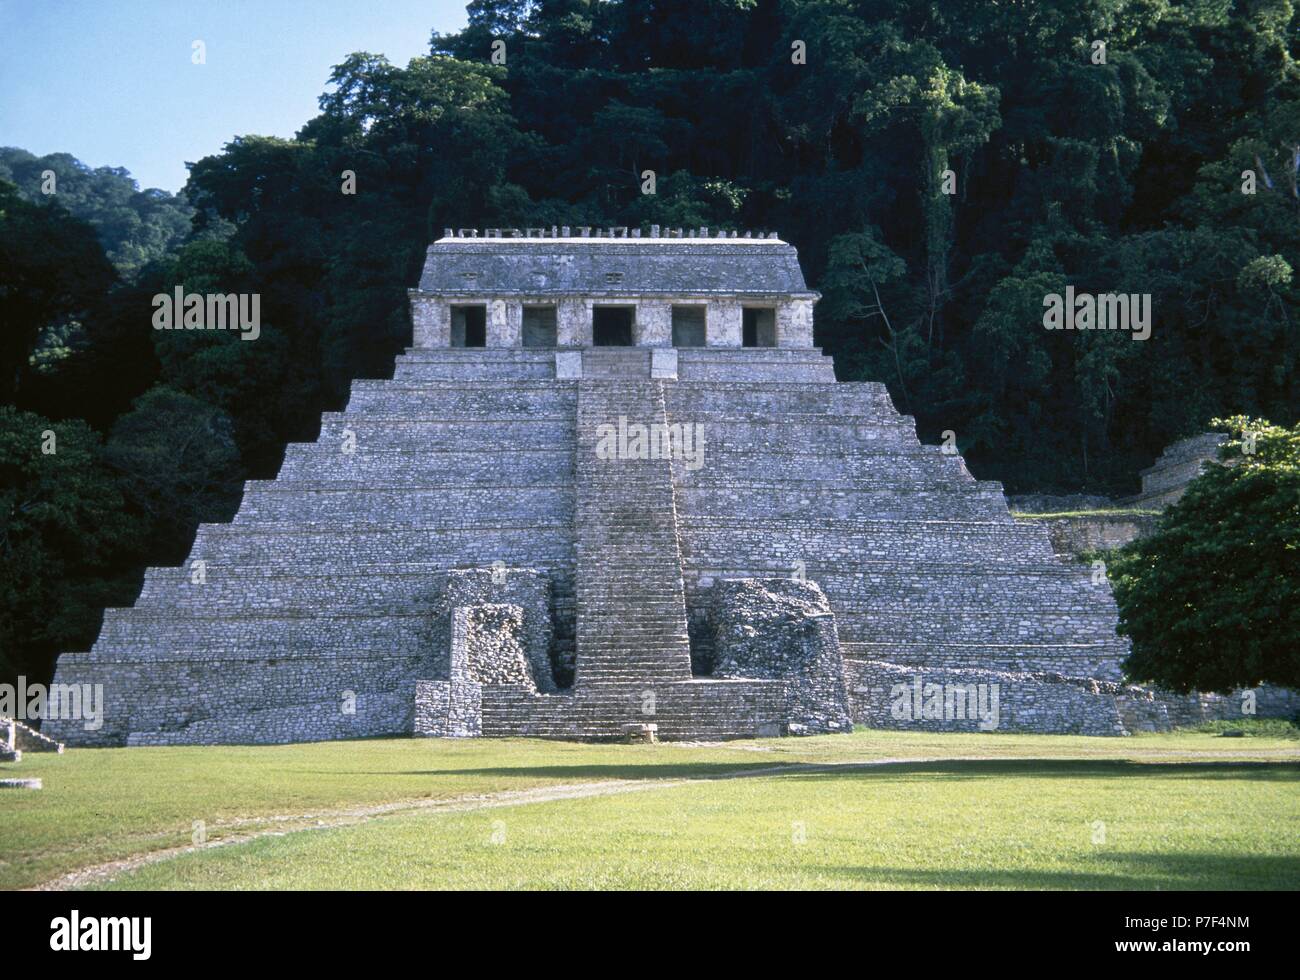 Le Mexique. Palenque. Ville Maya. 7ème-8ème c. temple des Inscriptions. Monument funéraire d'Hanab-Kapal. Période classique. Banque D'Images